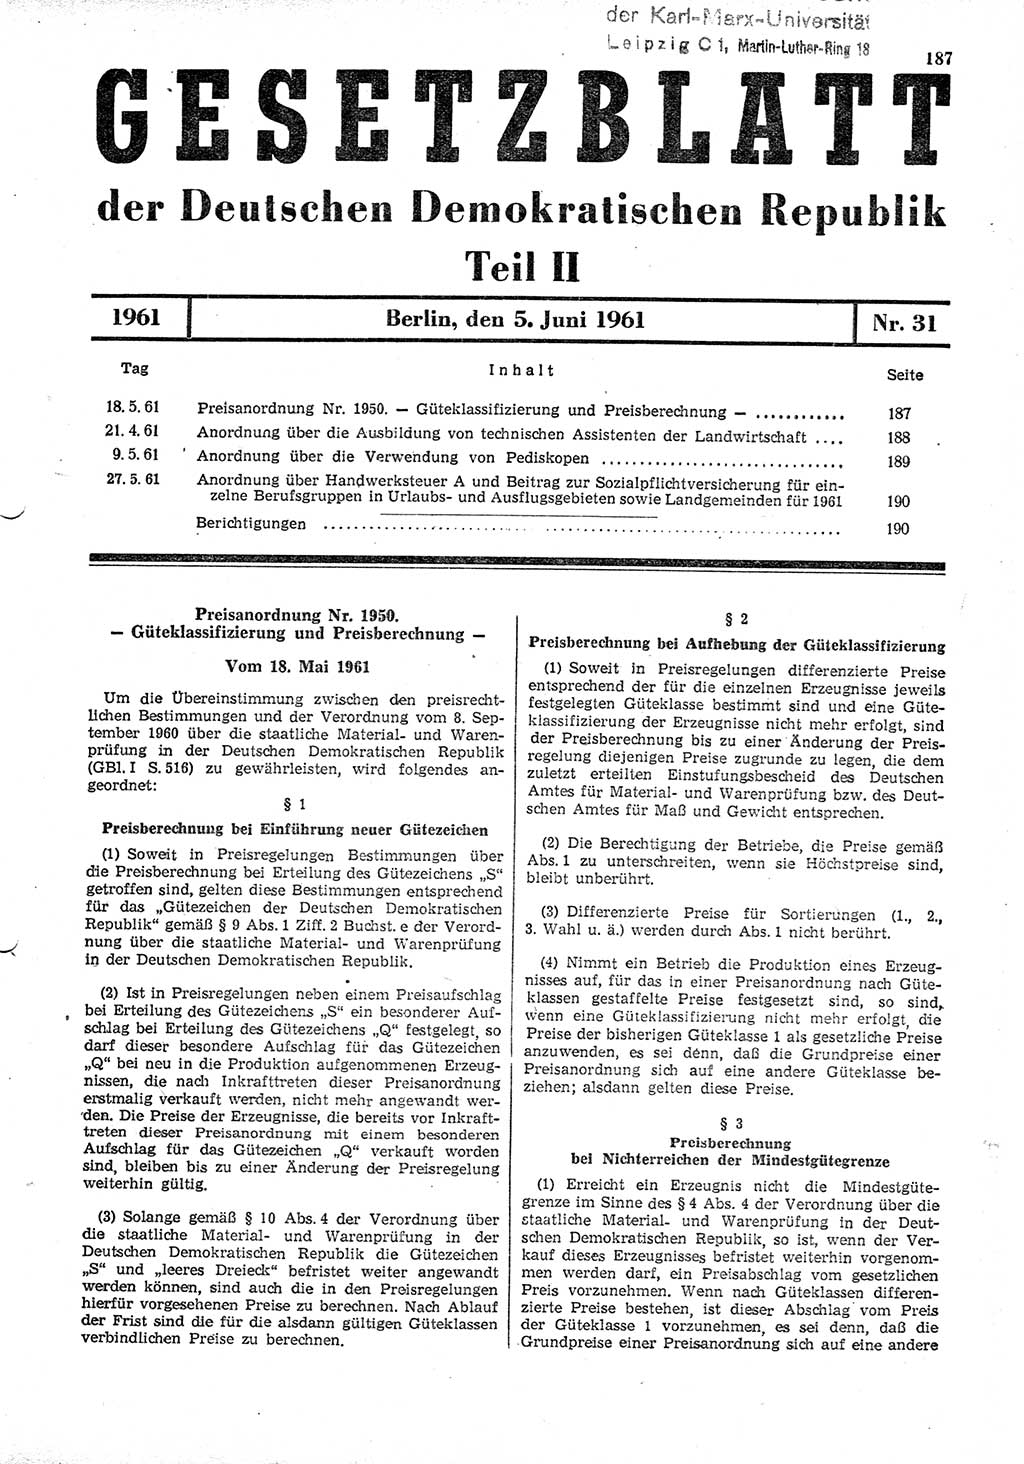 Gesetzblatt (GBl.) der Deutschen Demokratischen Republik (DDR) Teil ⅠⅠ 1961, Seite 187 (GBl. DDR ⅠⅠ 1961, S. 187)